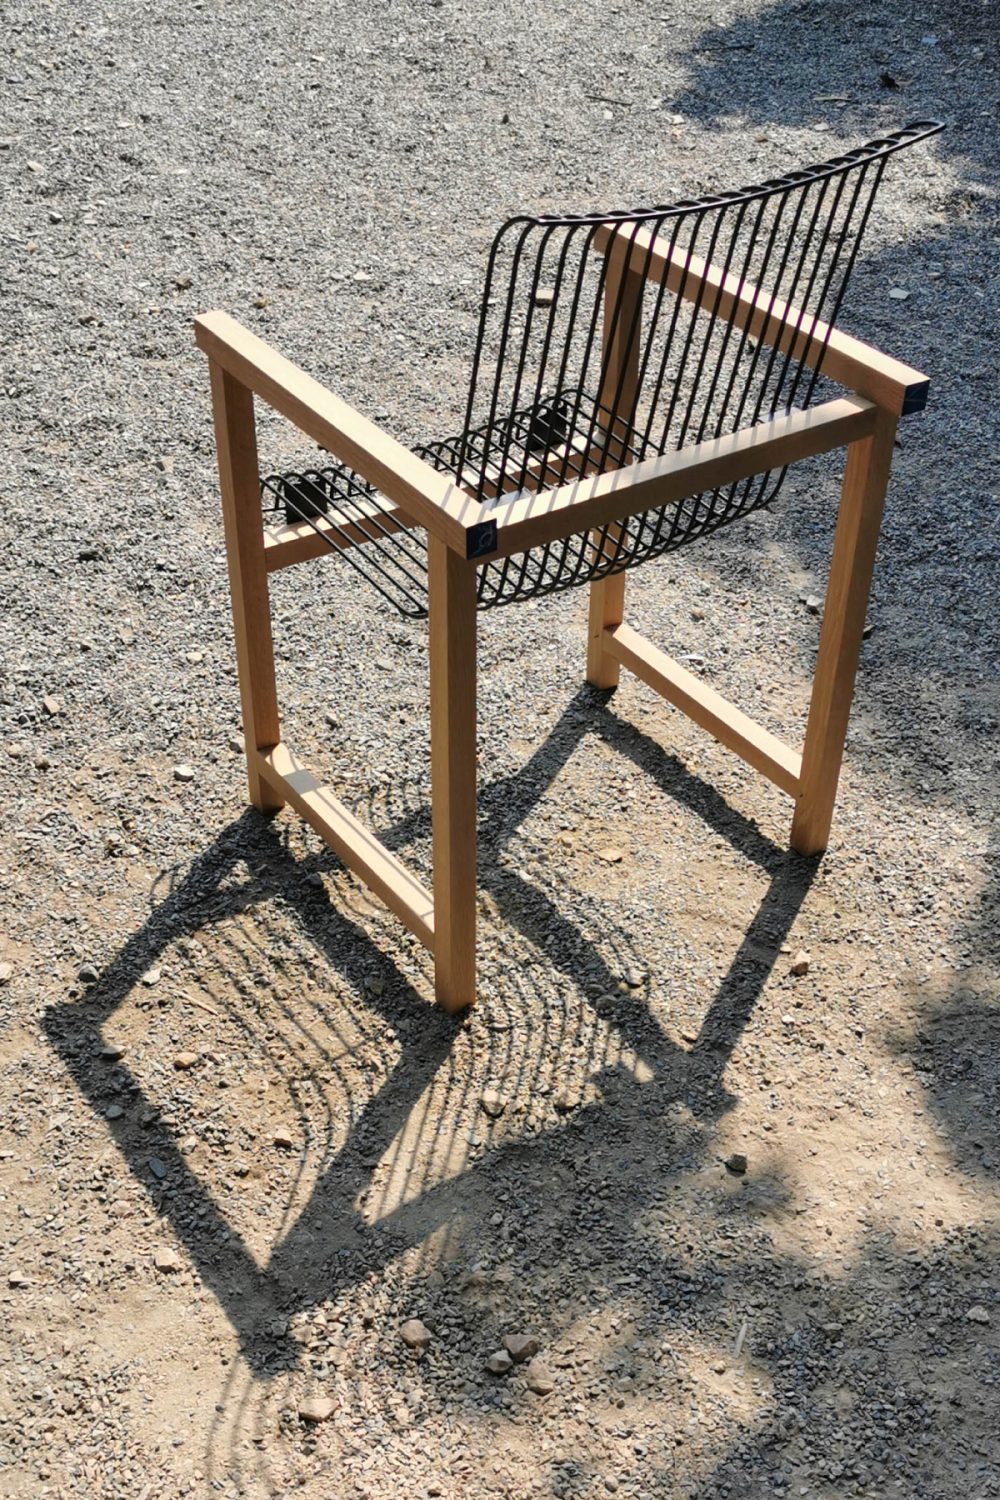 Loom Chair เก้าอี้เหล็ก เก้าอี้ไม้ รางวัล DEmark 2020 plural designs คุณพิบูลย์ อมรจิรพร